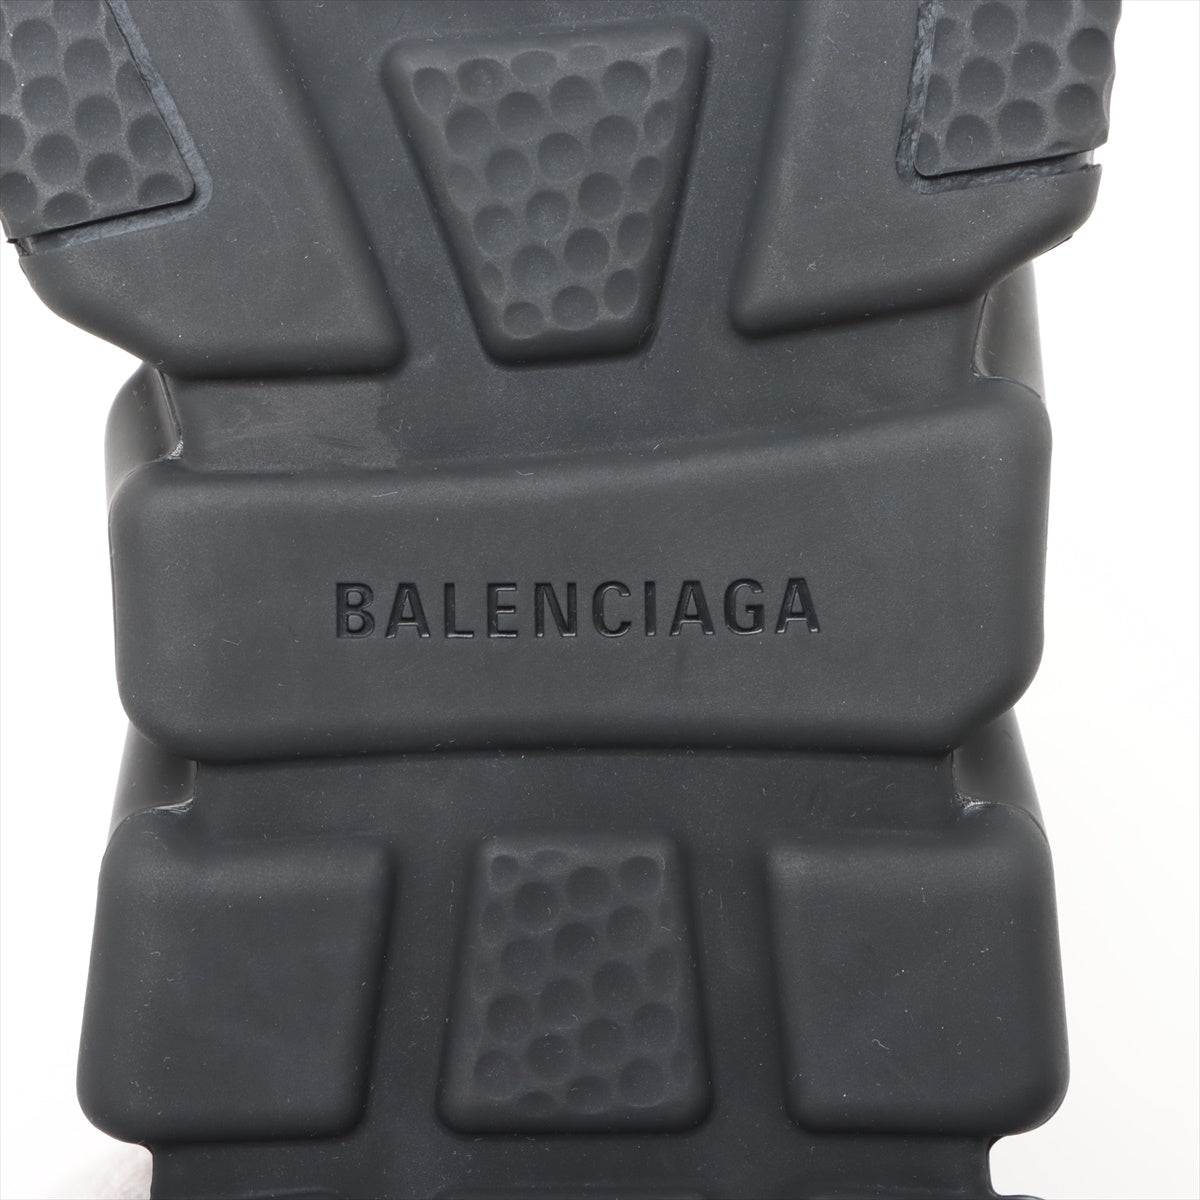 Balenciaga x Adidas 鞋履 27.5cm 黑色 x 白色 717591